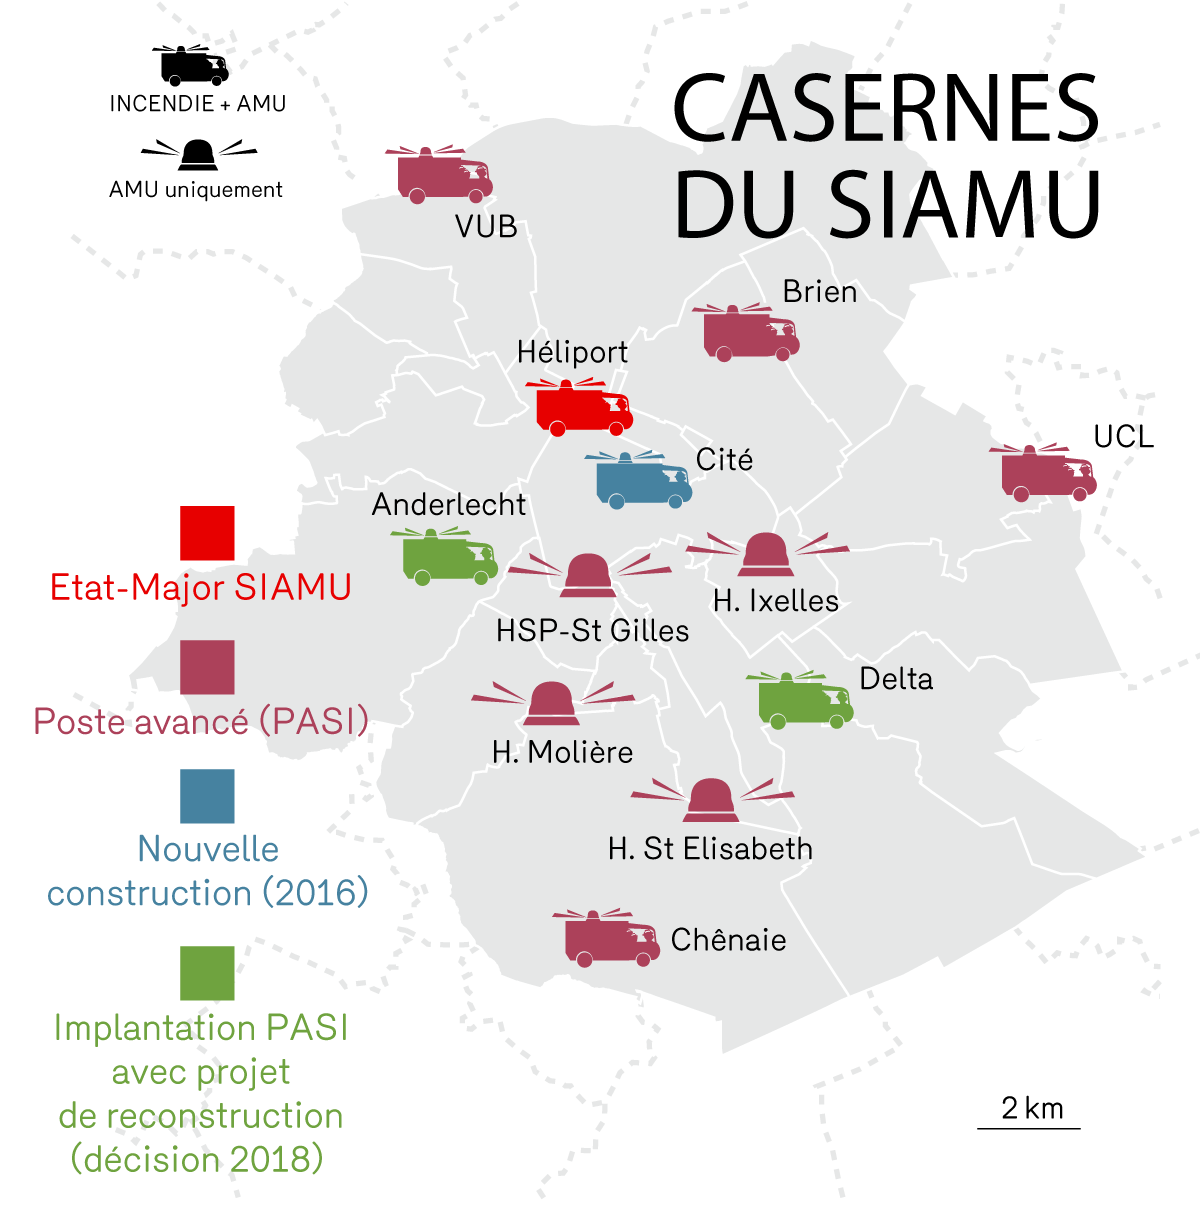 Les casernes du Service d'Incendie et d'Aide Médicale Urgente - SIAMI de la Région de Bruxelles-capitale